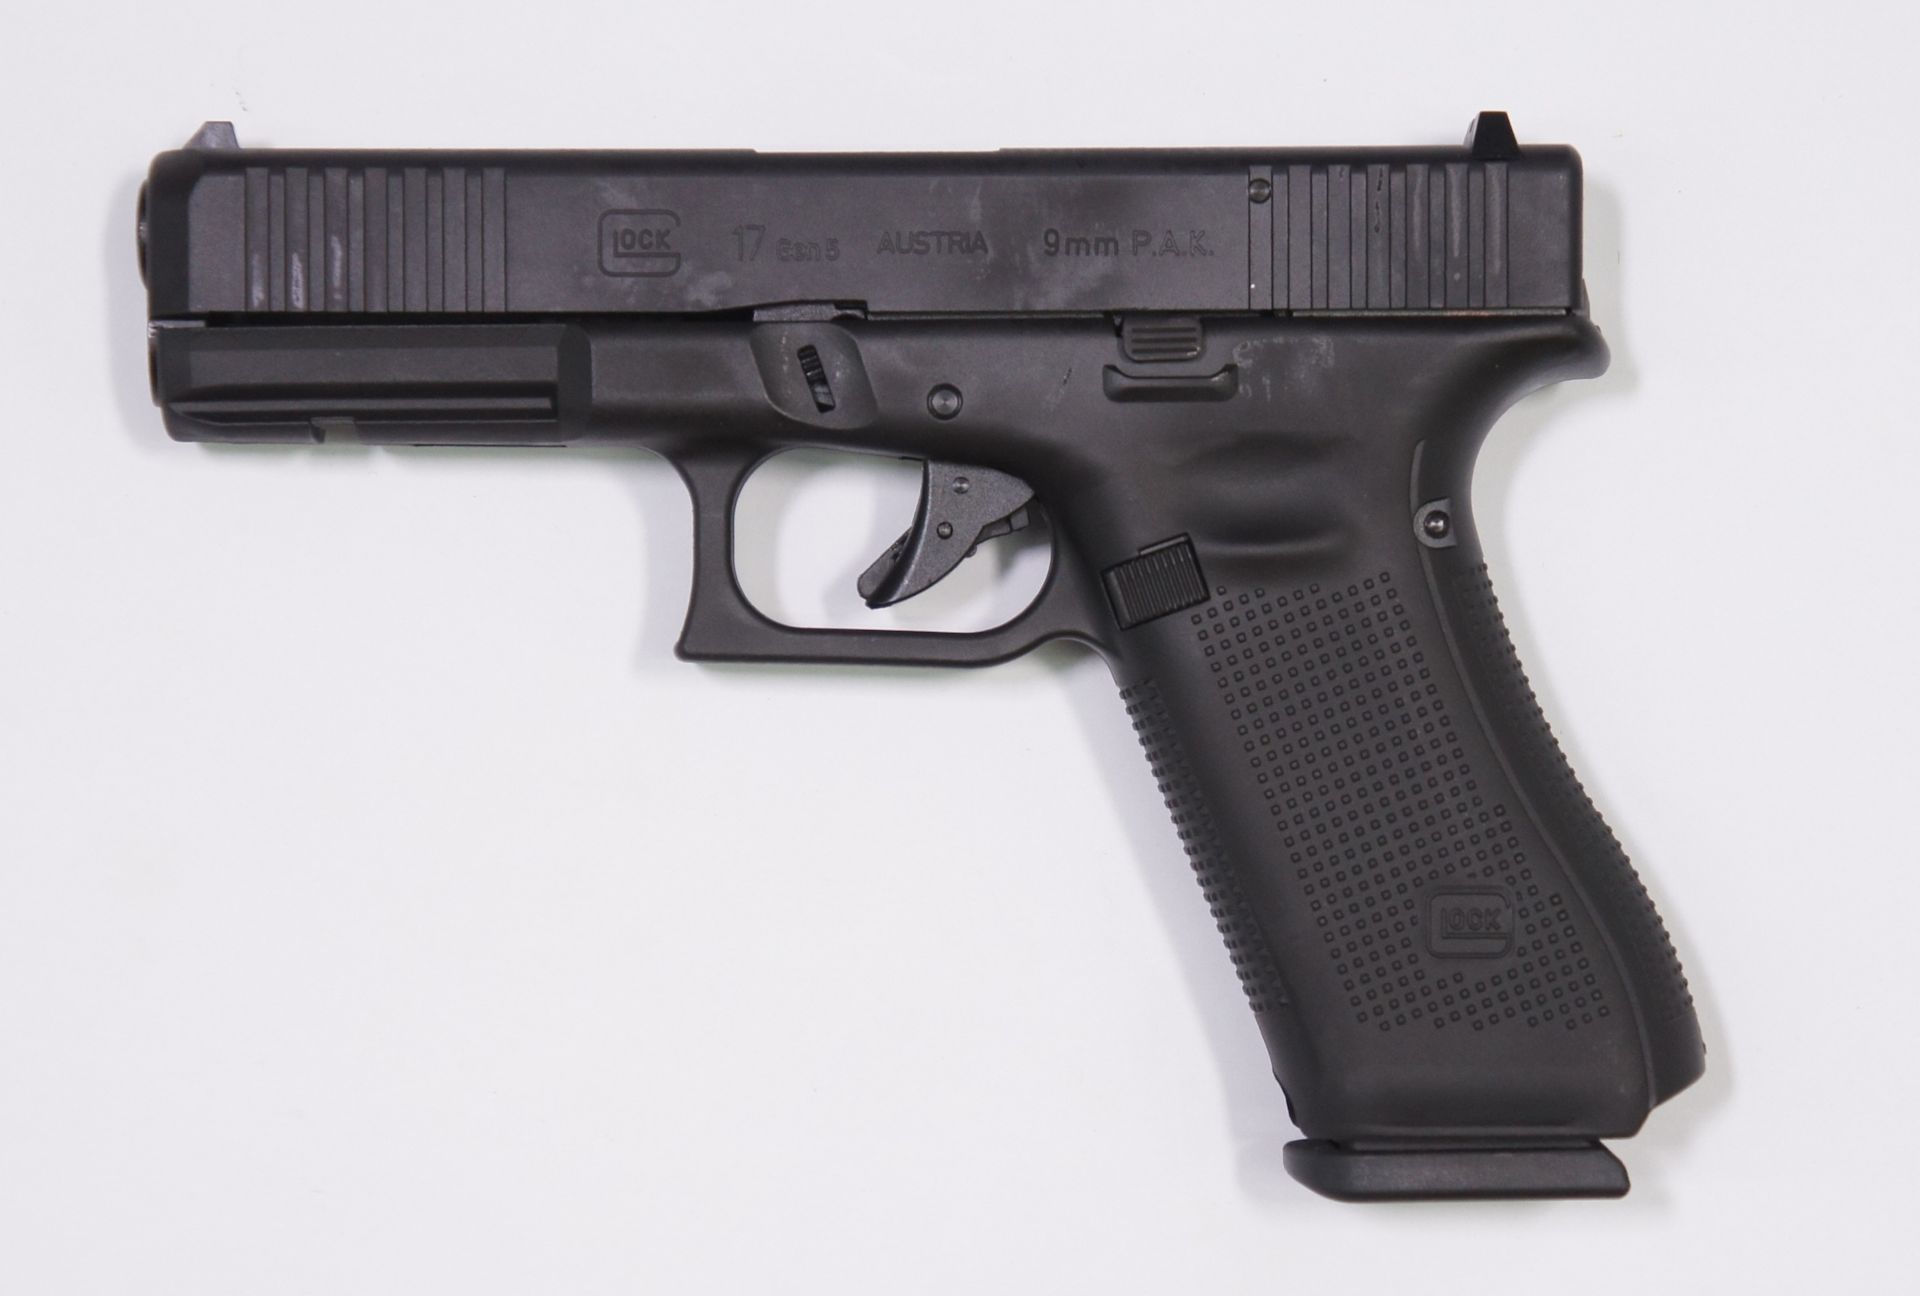 Glock 17 Gen5, Gaspistole in schwarz